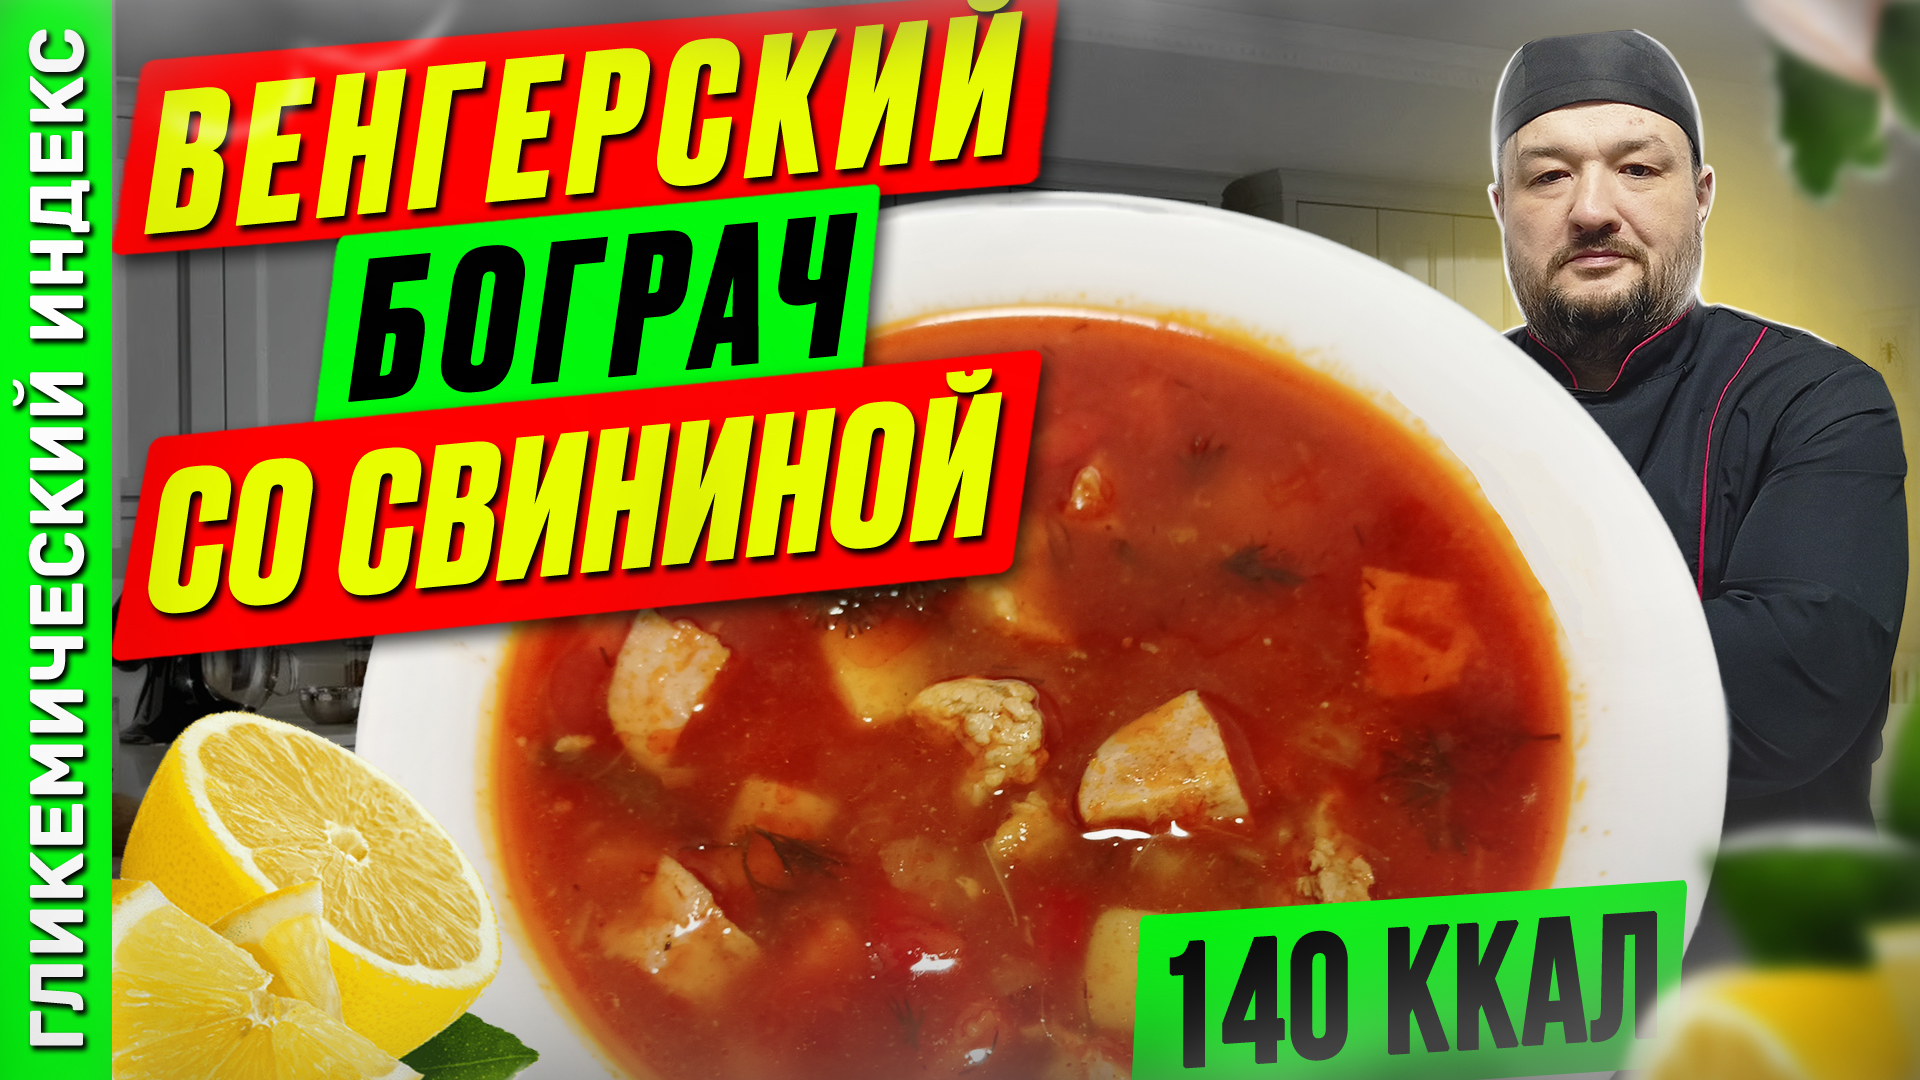 Венгерский бограч со свининой  — рецепт супа в мультиварке.